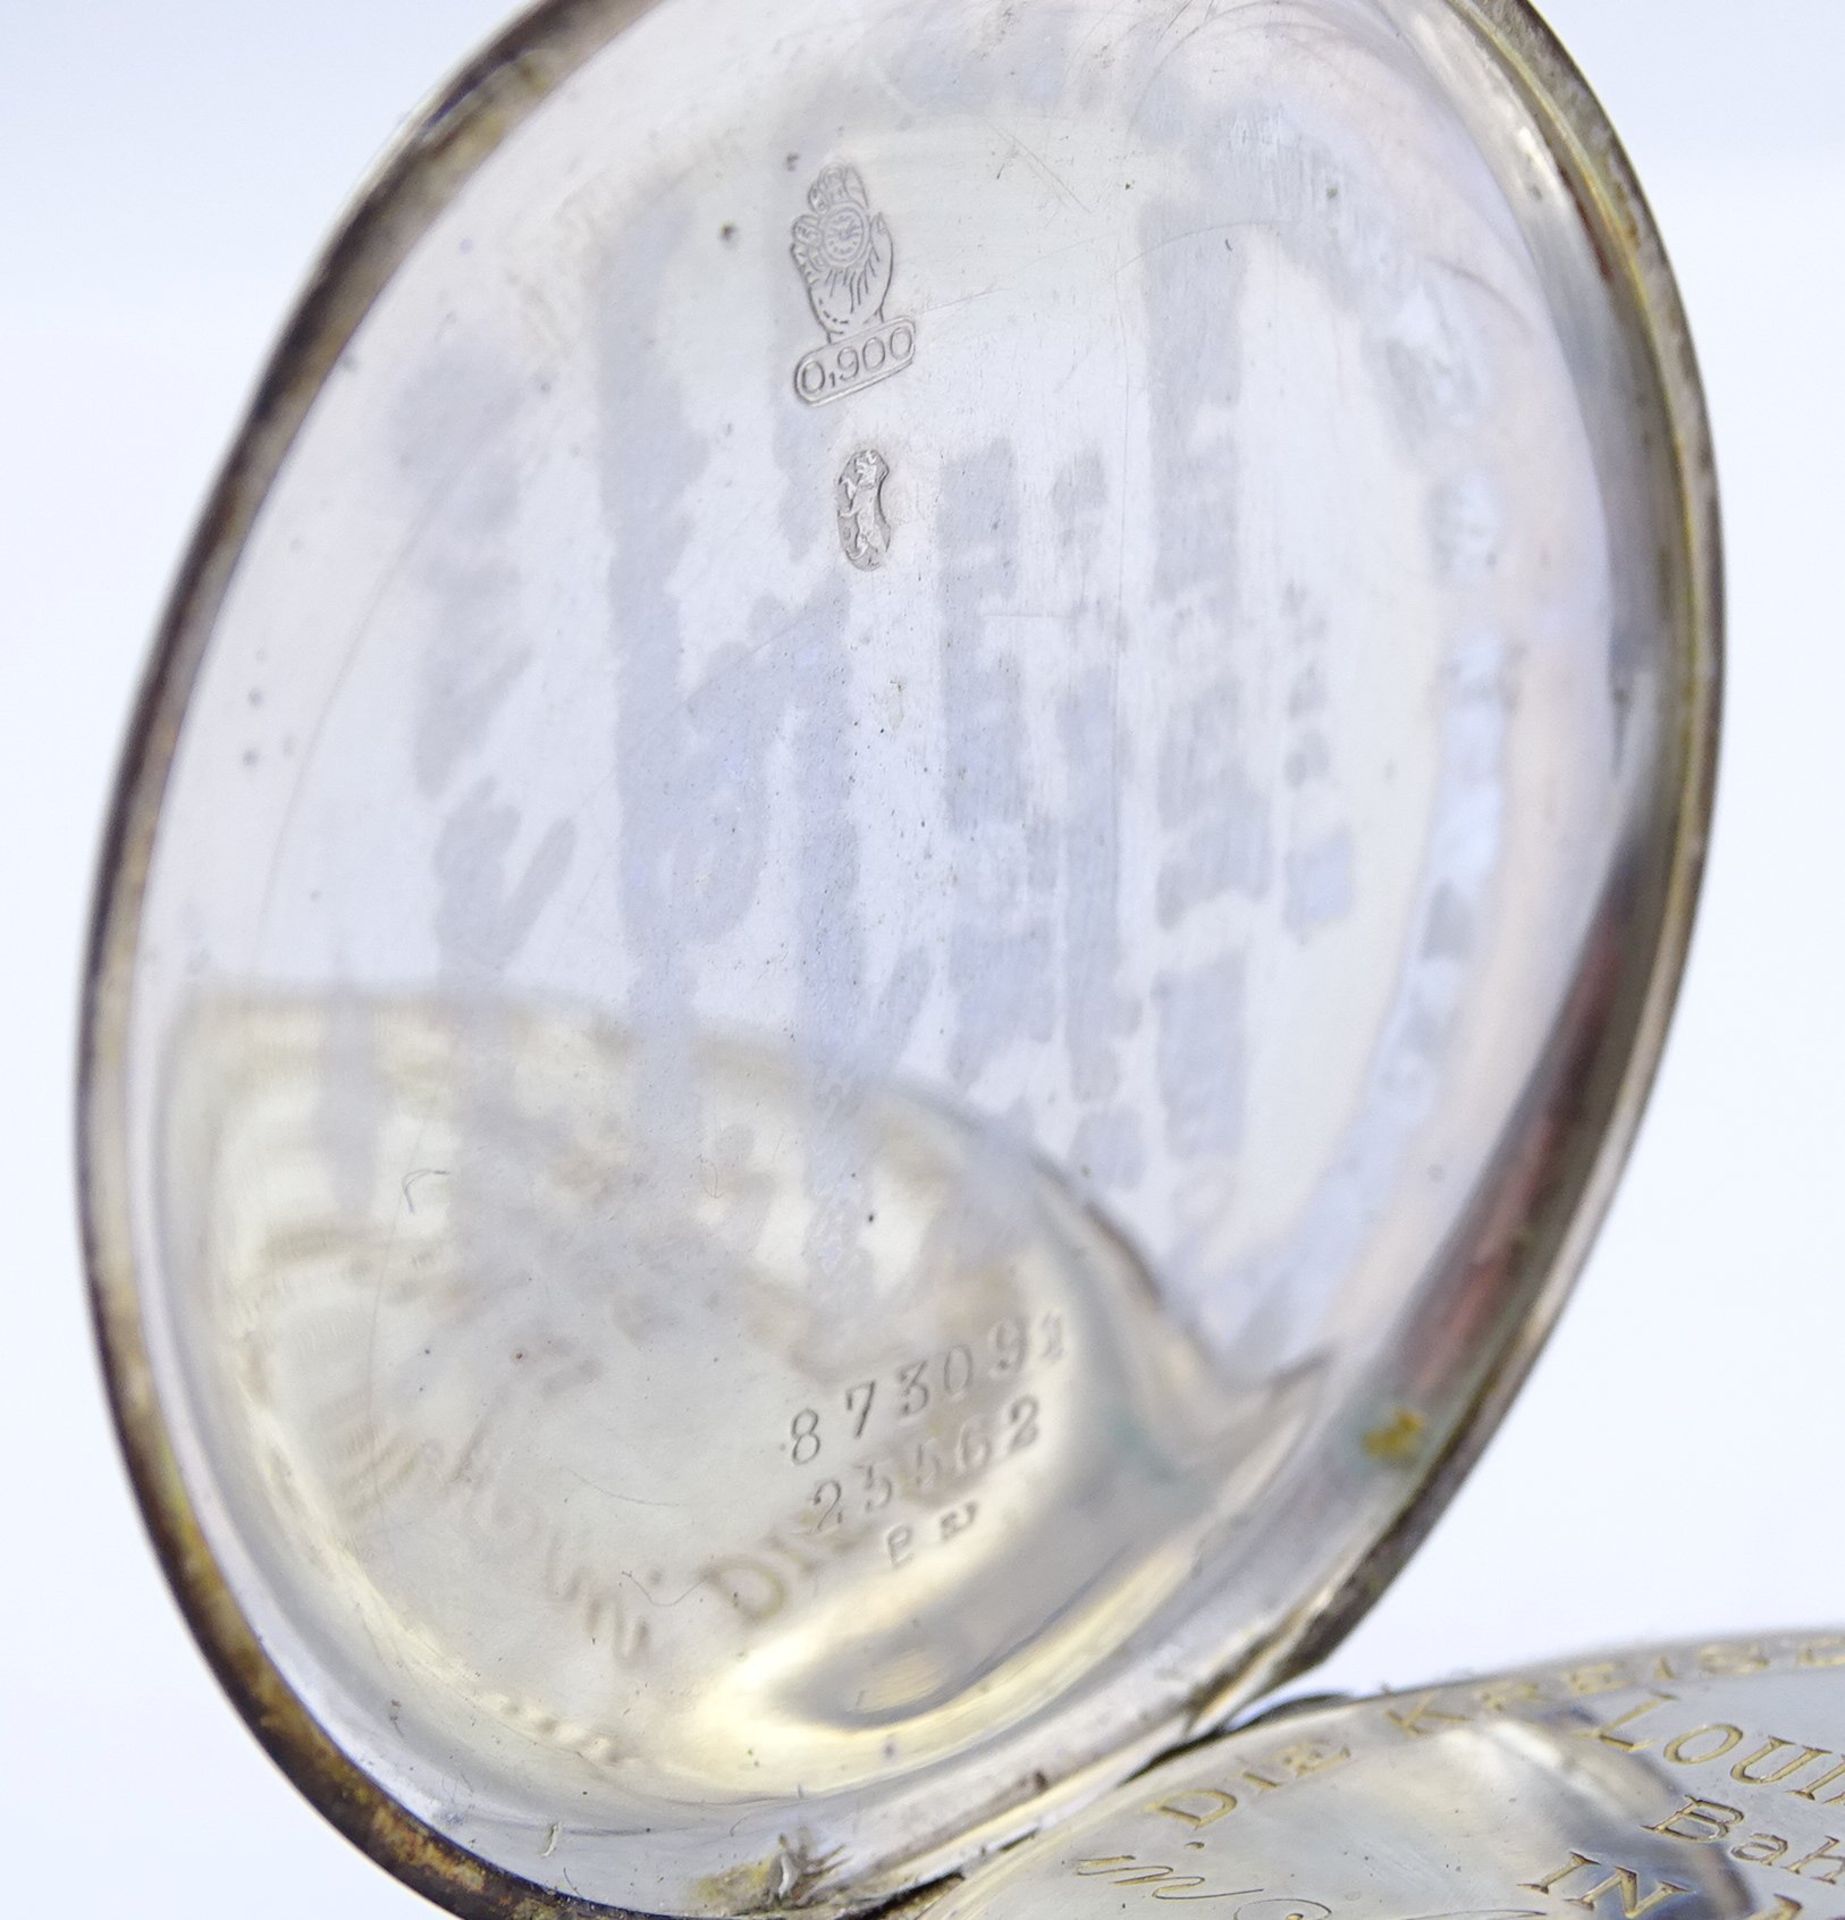 Taschenuhr "Movado", mechanisch, Werk steht, D. 49mm, Silber 900/000, Deckelgravur - Bild 5 aus 6